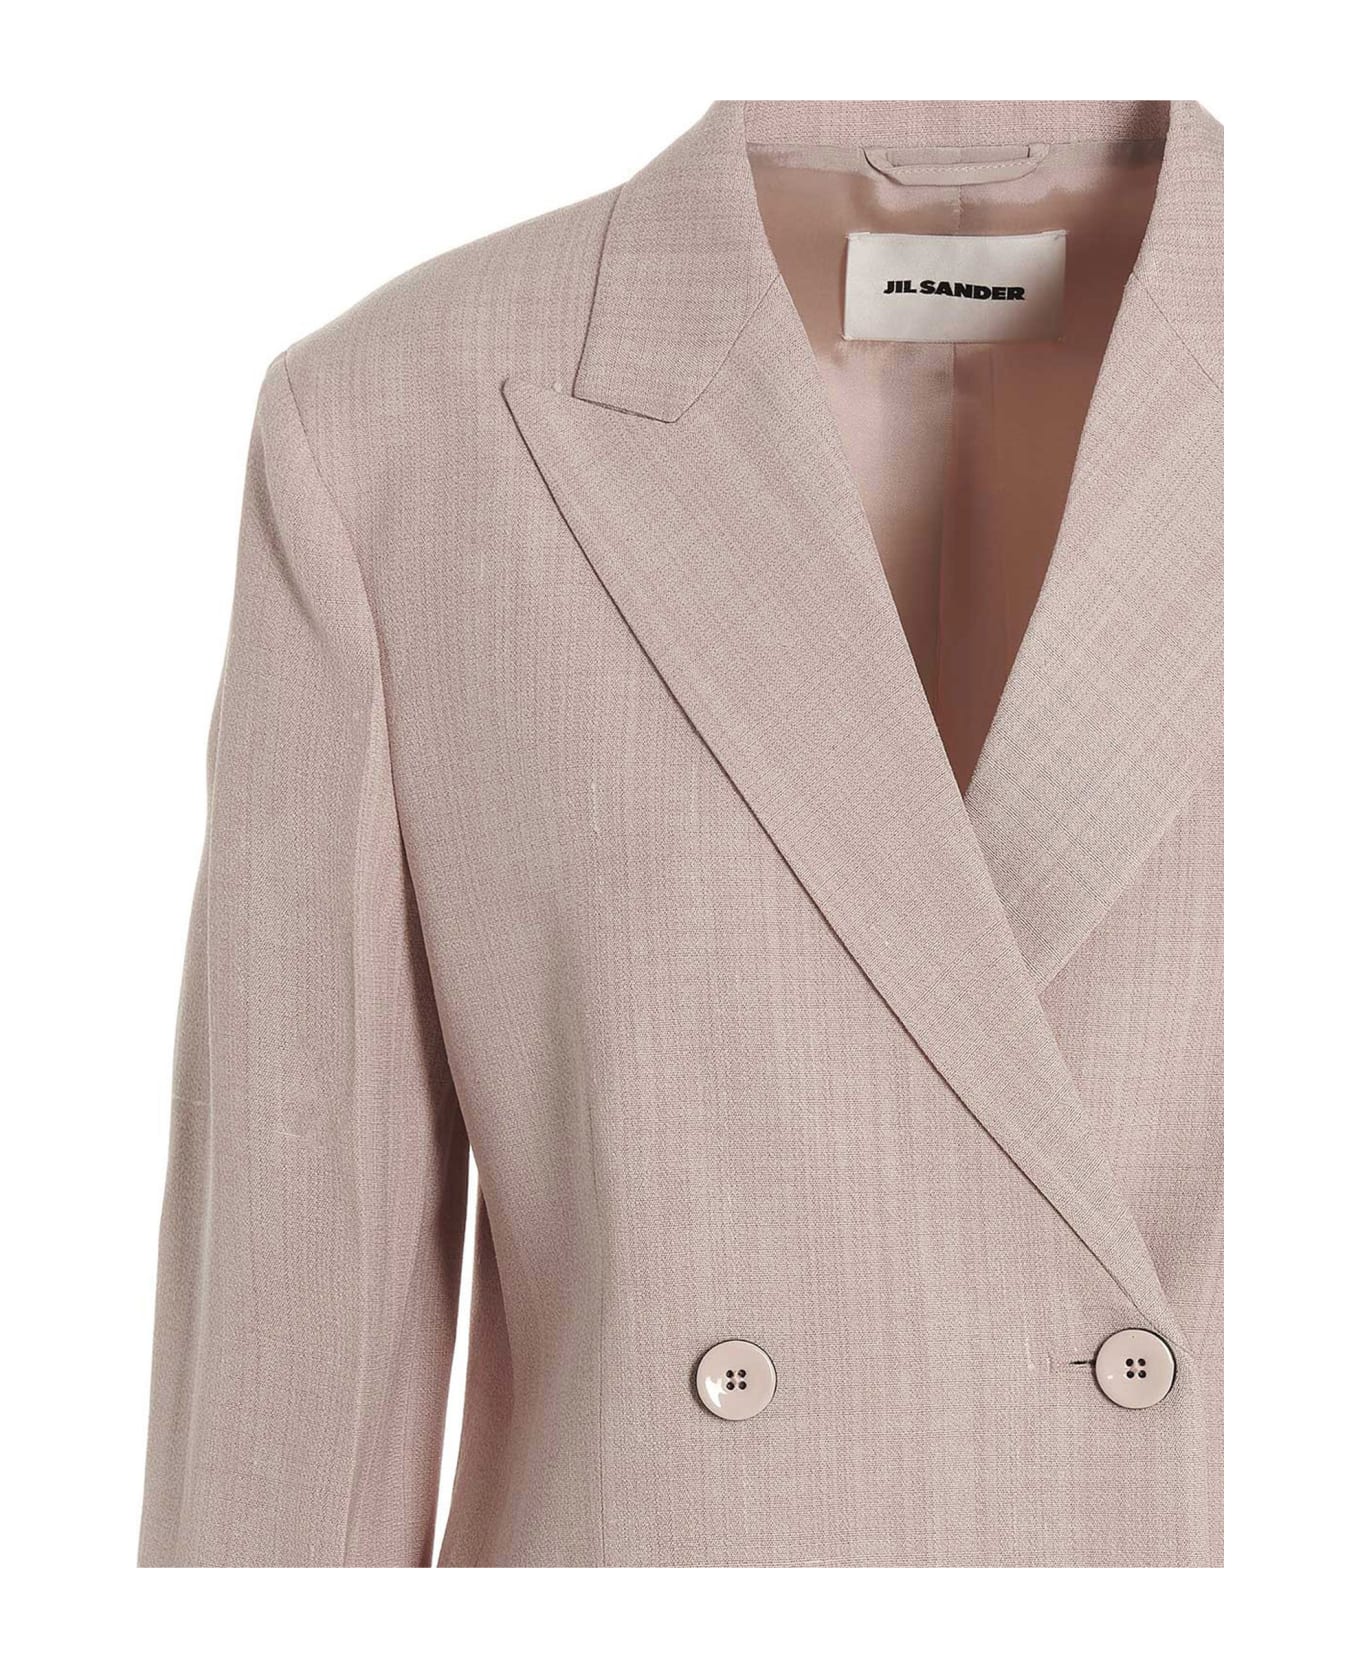 Jil Sander Double Breast Blazer Jacket - Pink